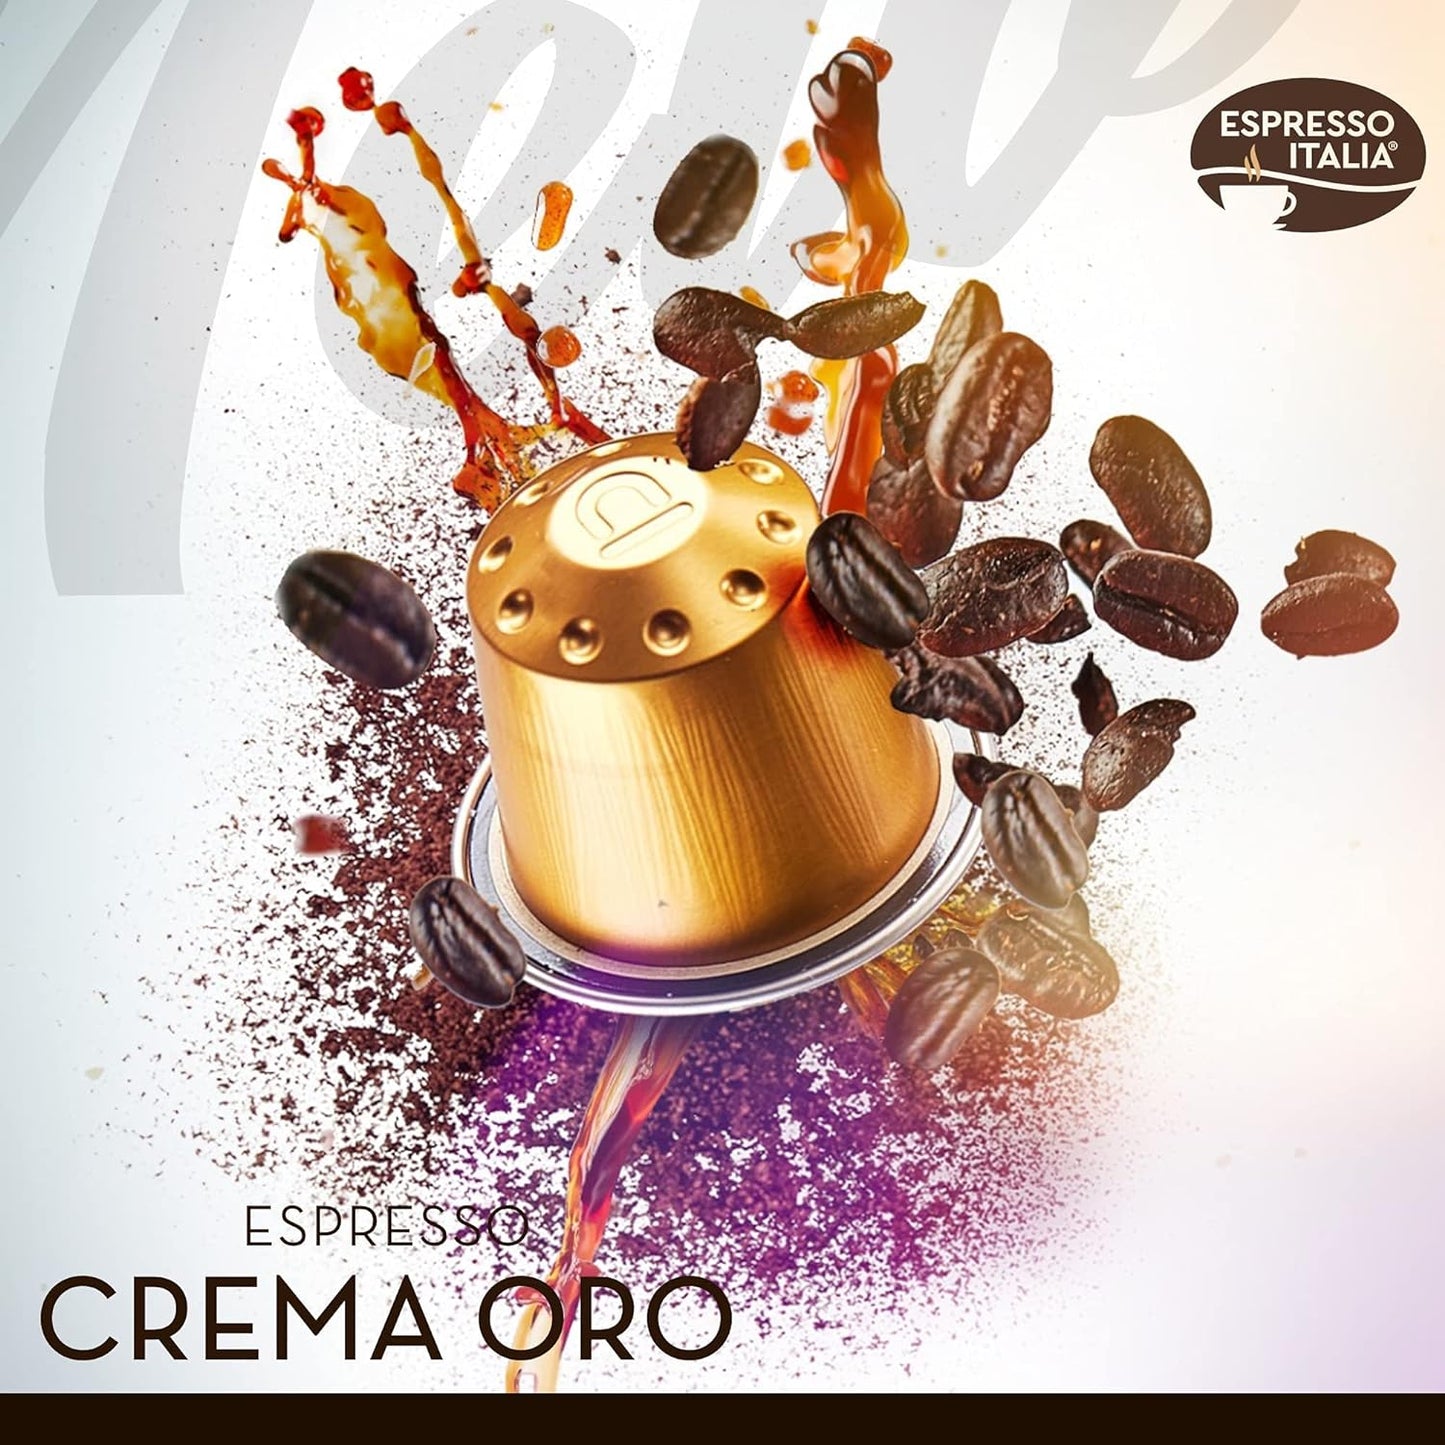 Crema Oro Espresso Italia Aluminium Nespresso Compatible Pods 1x20